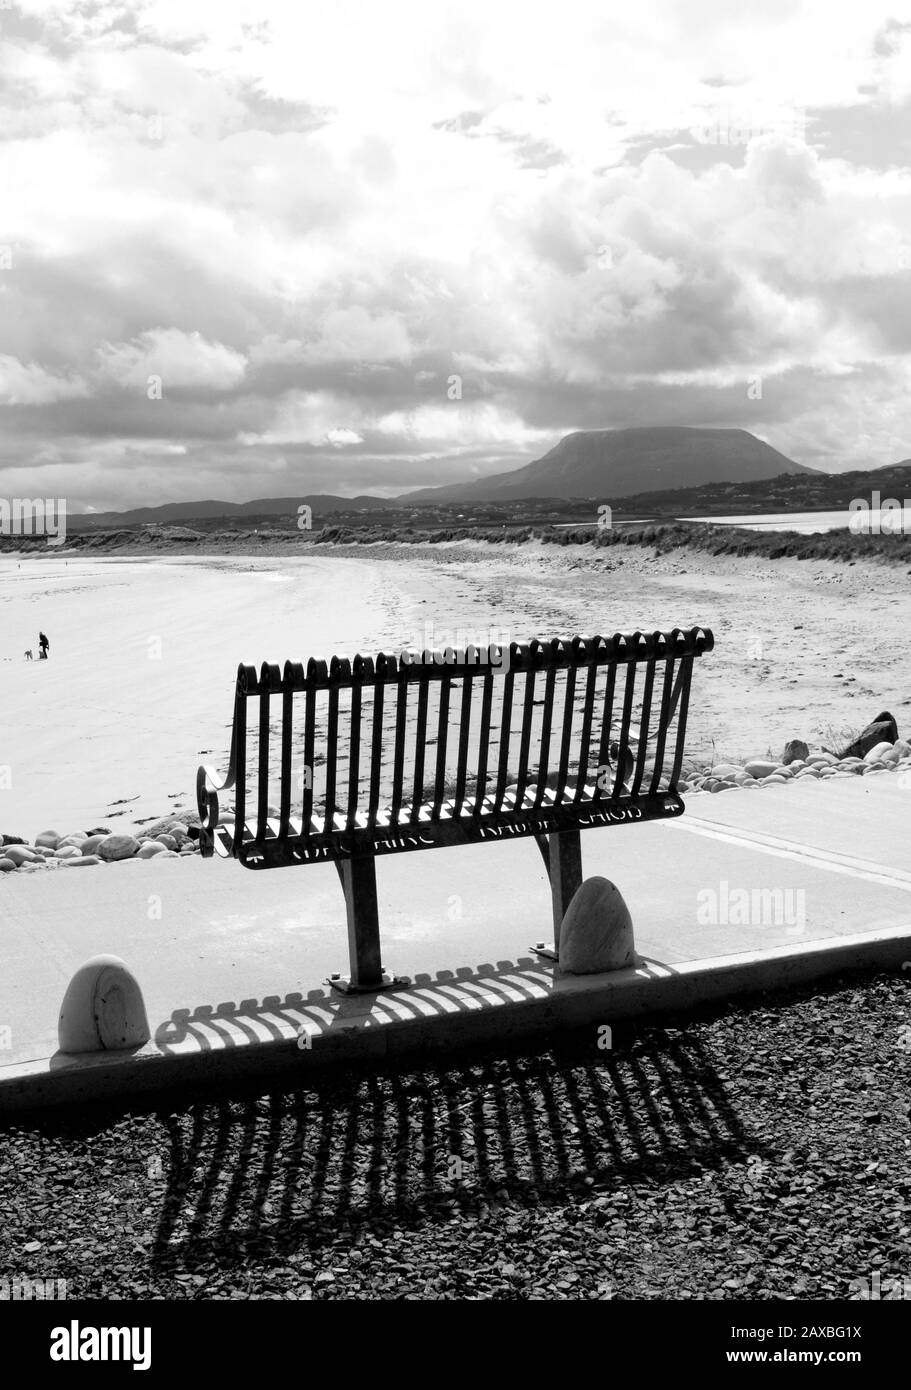 Un banc en métal jette une ombre avec une plage isolée et une montagne en arrière-plan. Magheraroarty, Co. Donegal, Irlande Banque D'Images